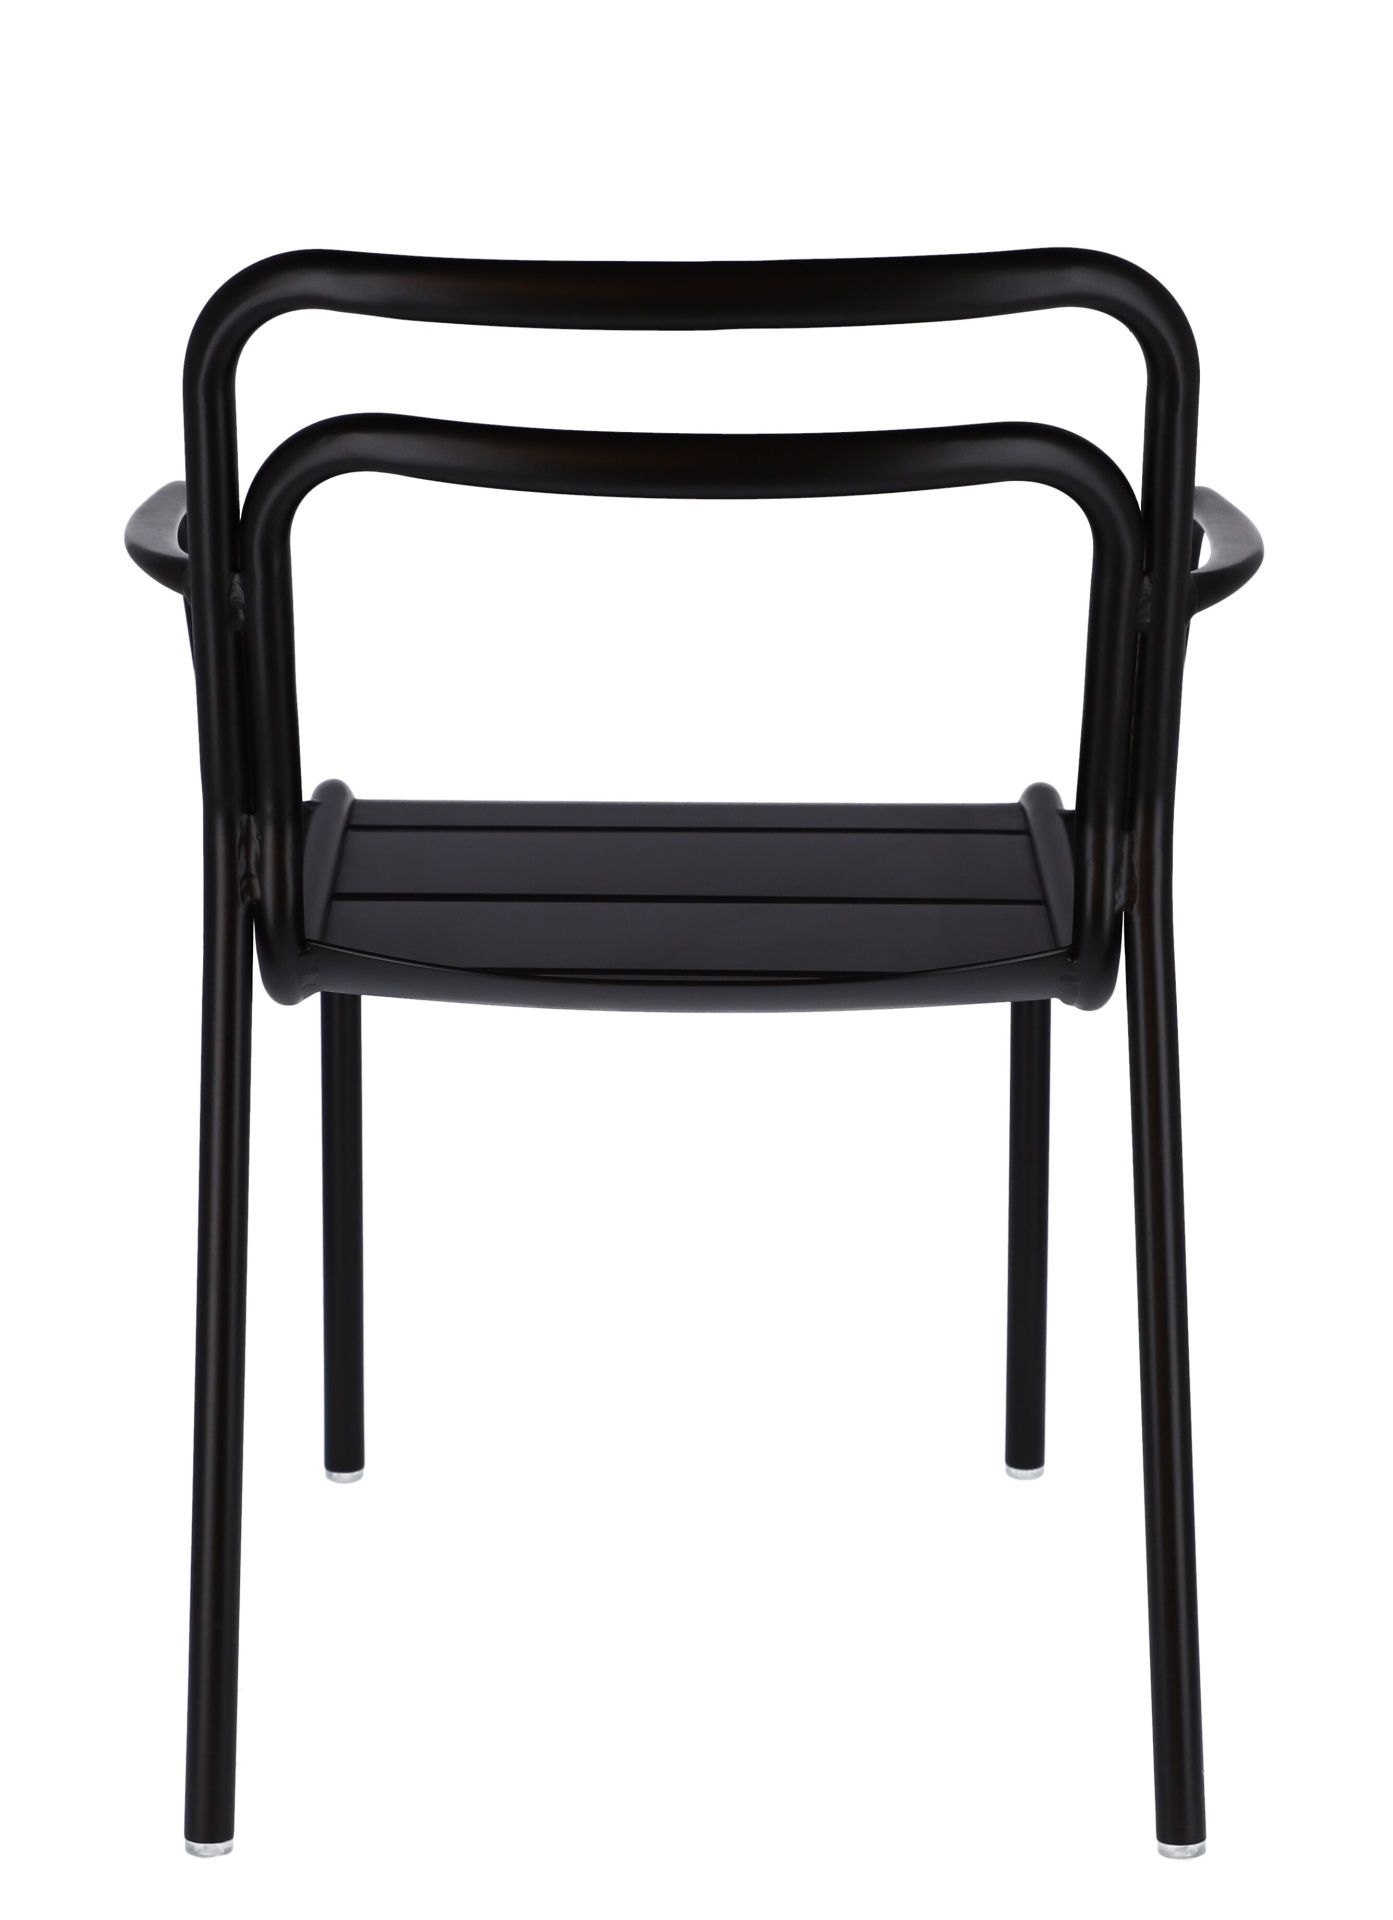 Der moderne Gartensessel Live wurde aus Aluminium hergestellt. Designet wurde er von der Marke Jan Kurtz. Die Farbe des Sessels ist Schwarz.